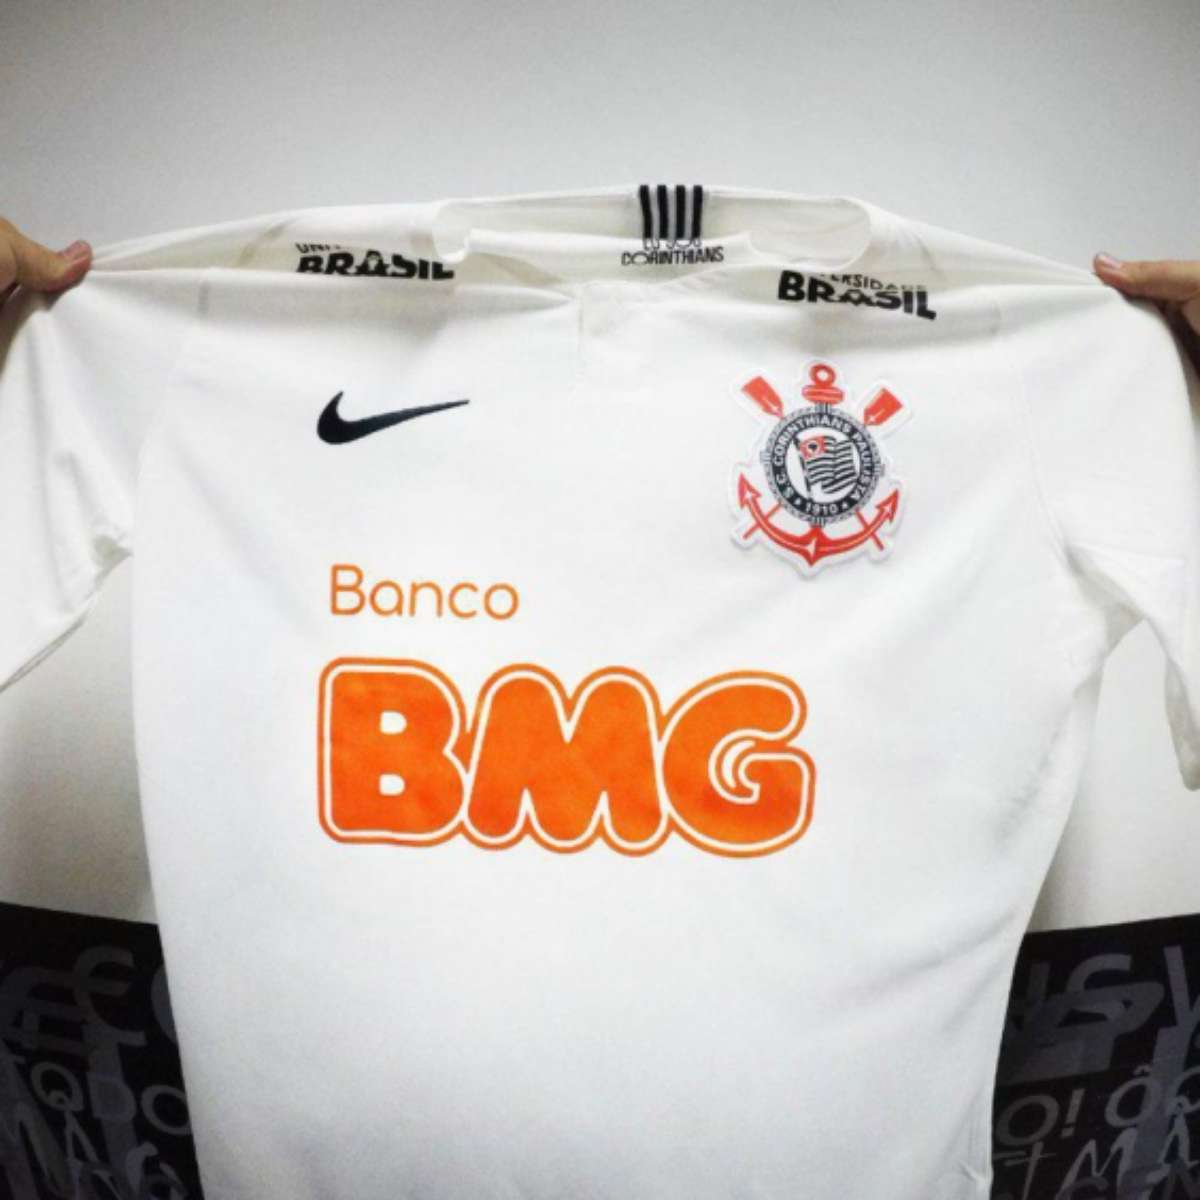 Corinthians anuncia patrocínio para as mangas da camisa até fim de 2020